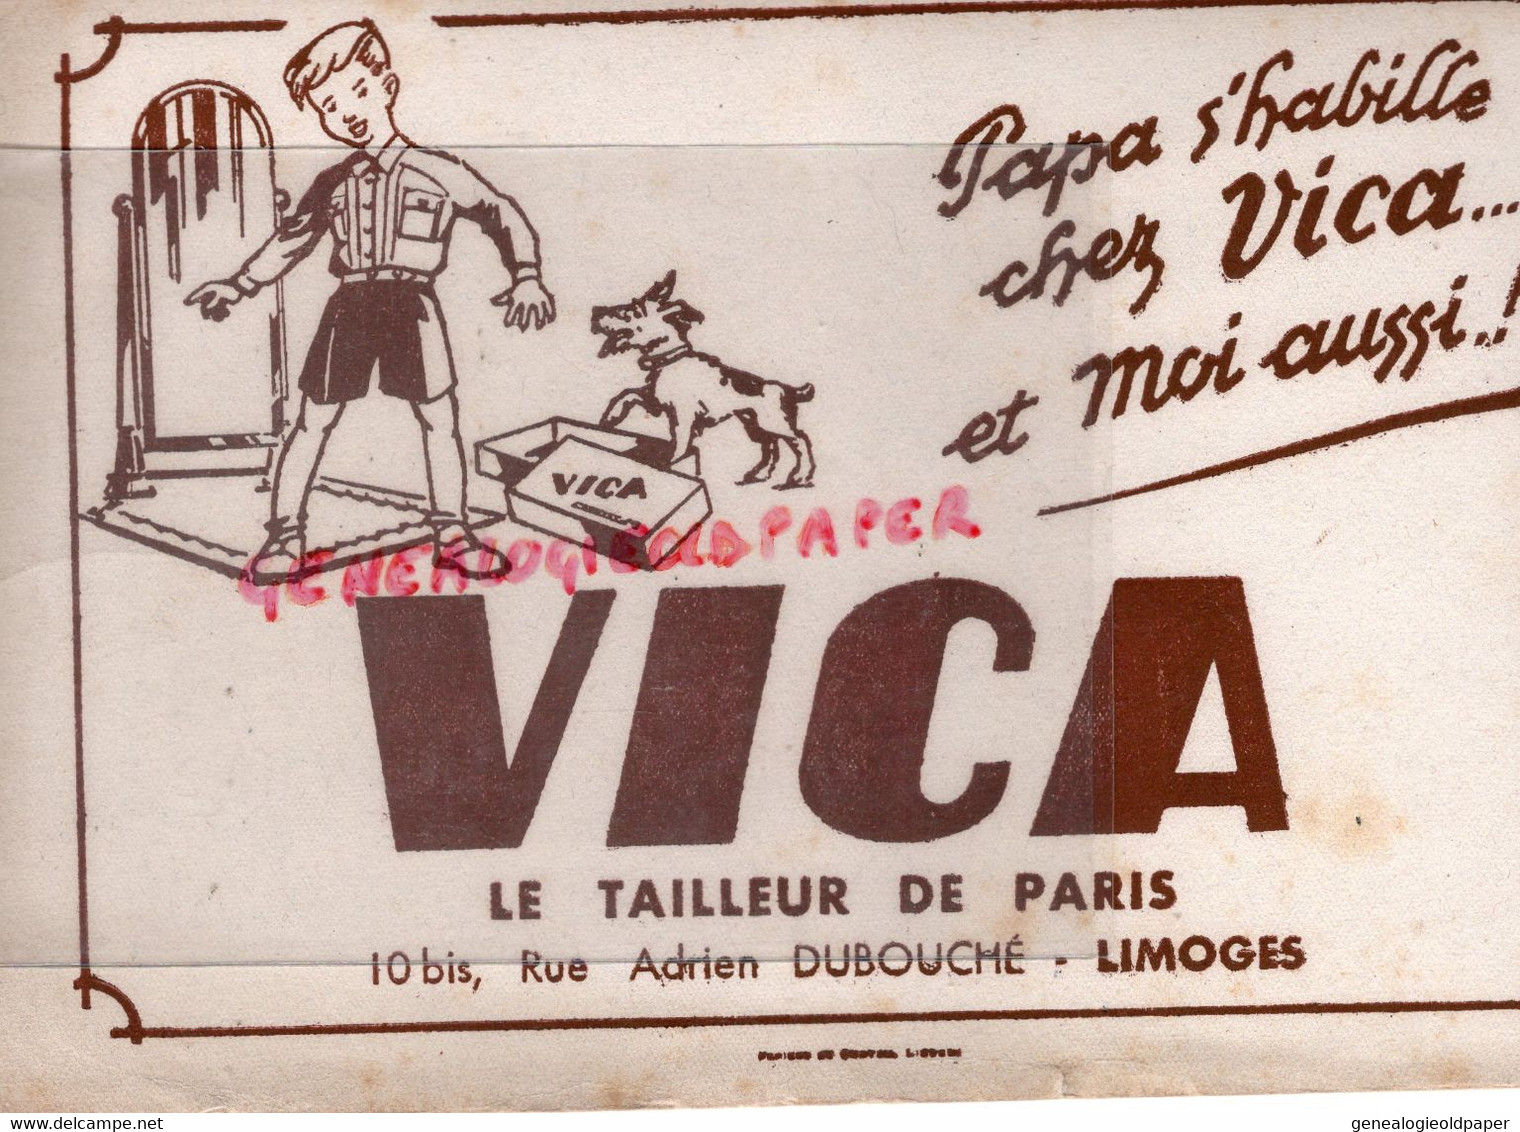 87- LIMOGES- RARE BUVARD VICA LE TAILLEUR DE PARIS -CONFECTION VETEMENTS -10 BIS RUE ADRIEN DUBOUCHE- - Textile & Clothing